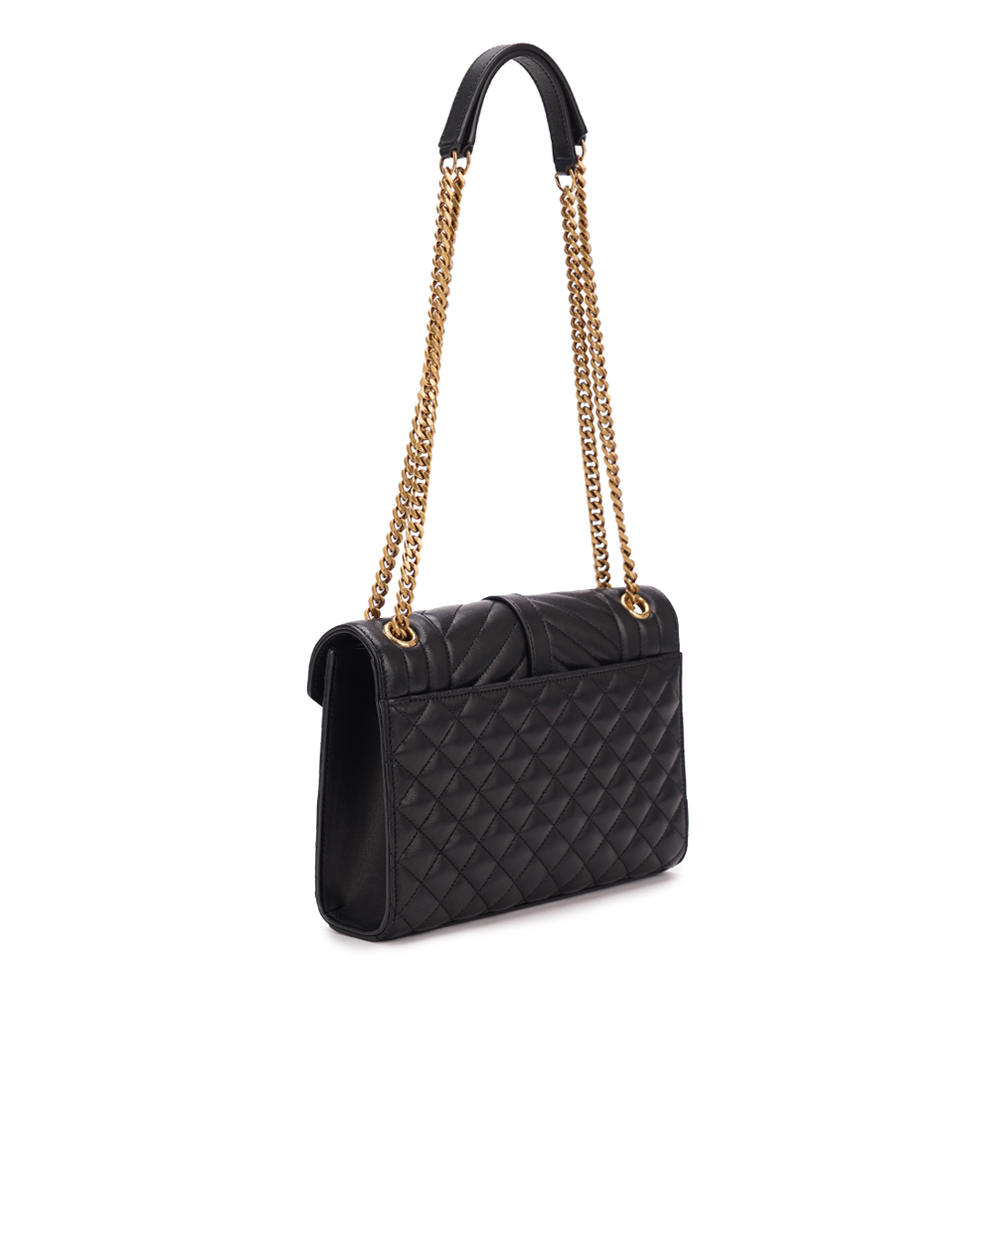 Кожаная сумка Envelope Medium Saint Laurent 600185-AACT7, черный цвет • Купить в интернет-магазине Kameron